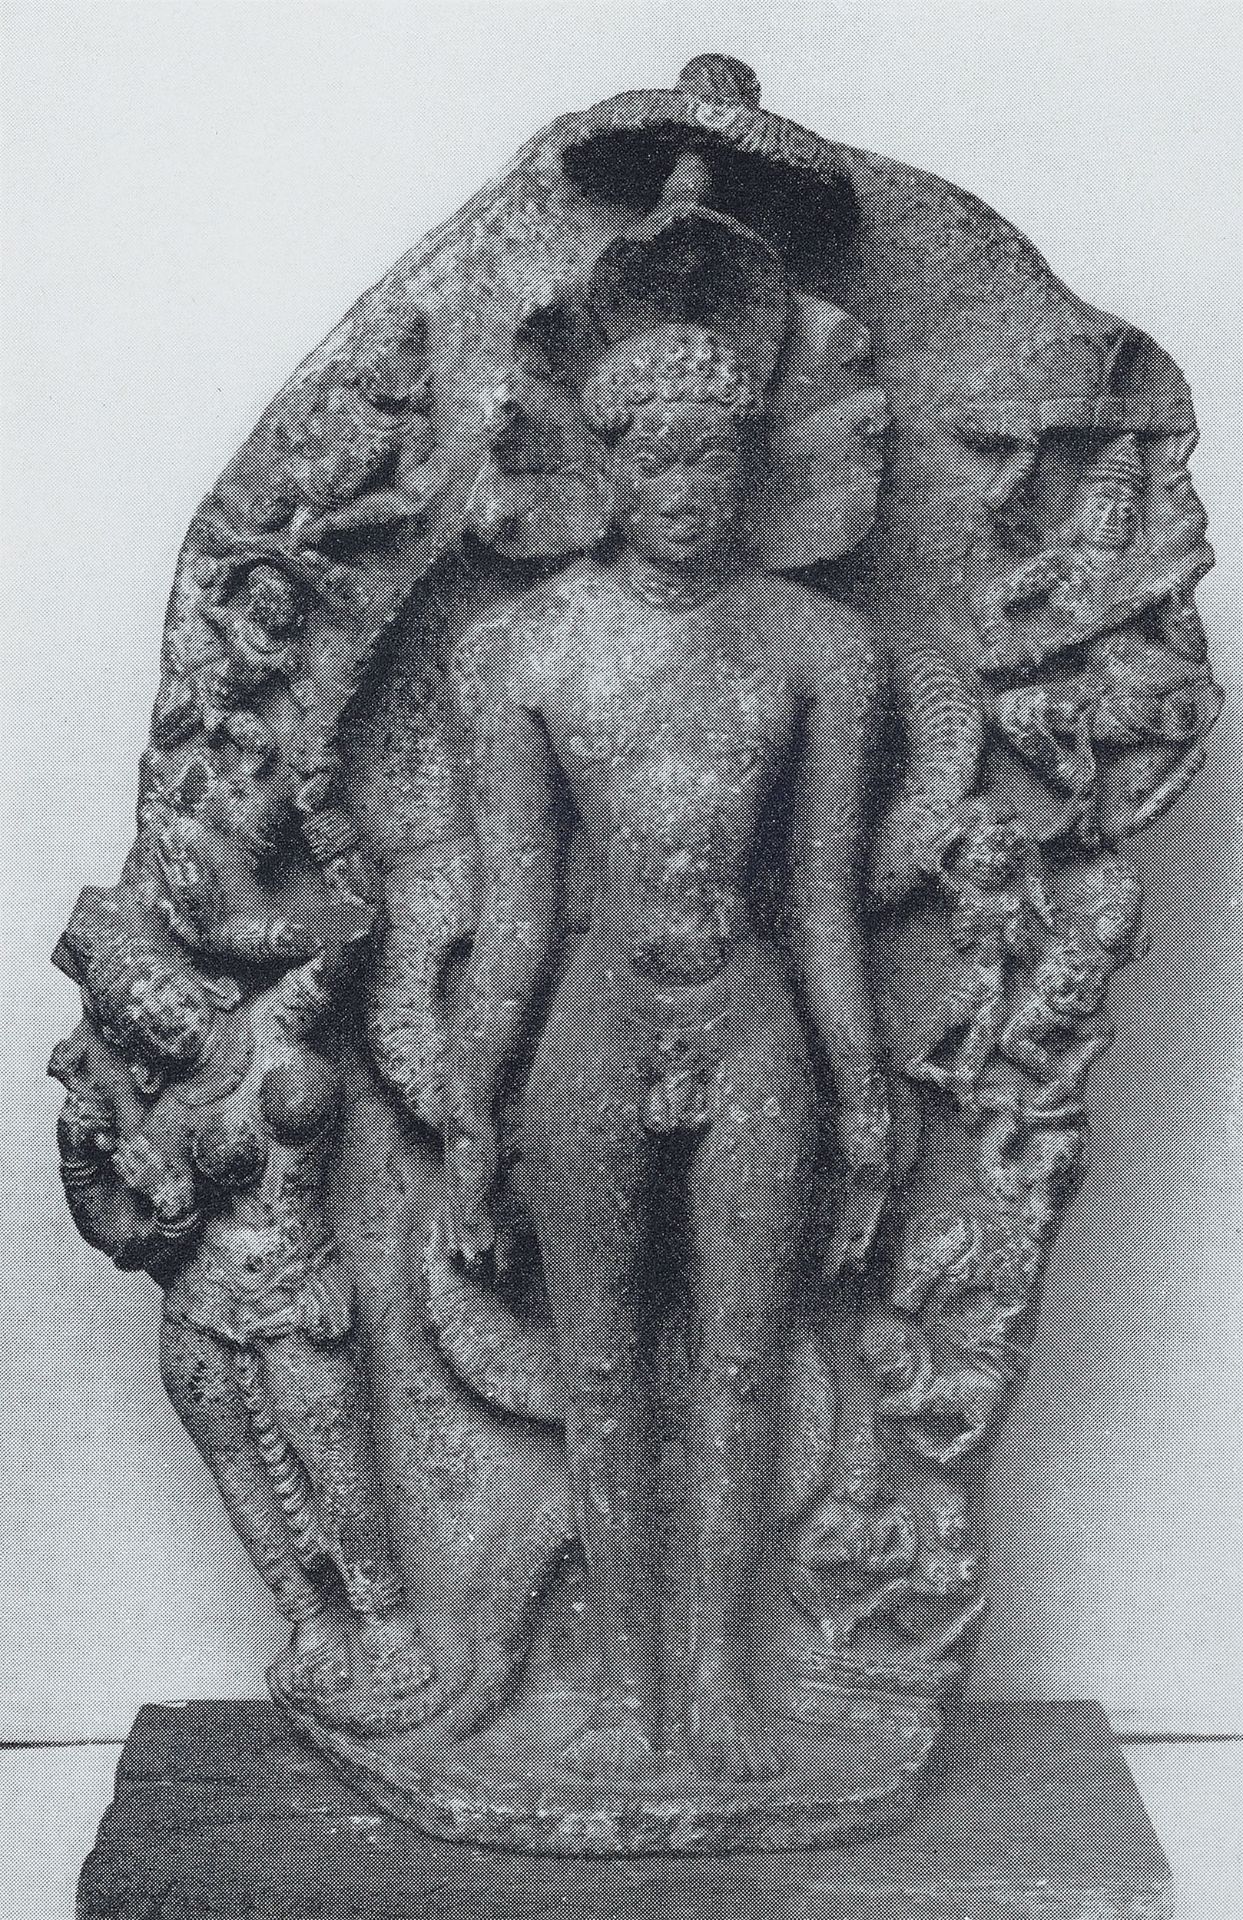 Große Stele des Parshvanatha. Stein. Indien, wohl Madhya Pradesh. 9./10. Jh. - Bild 4 aus 6